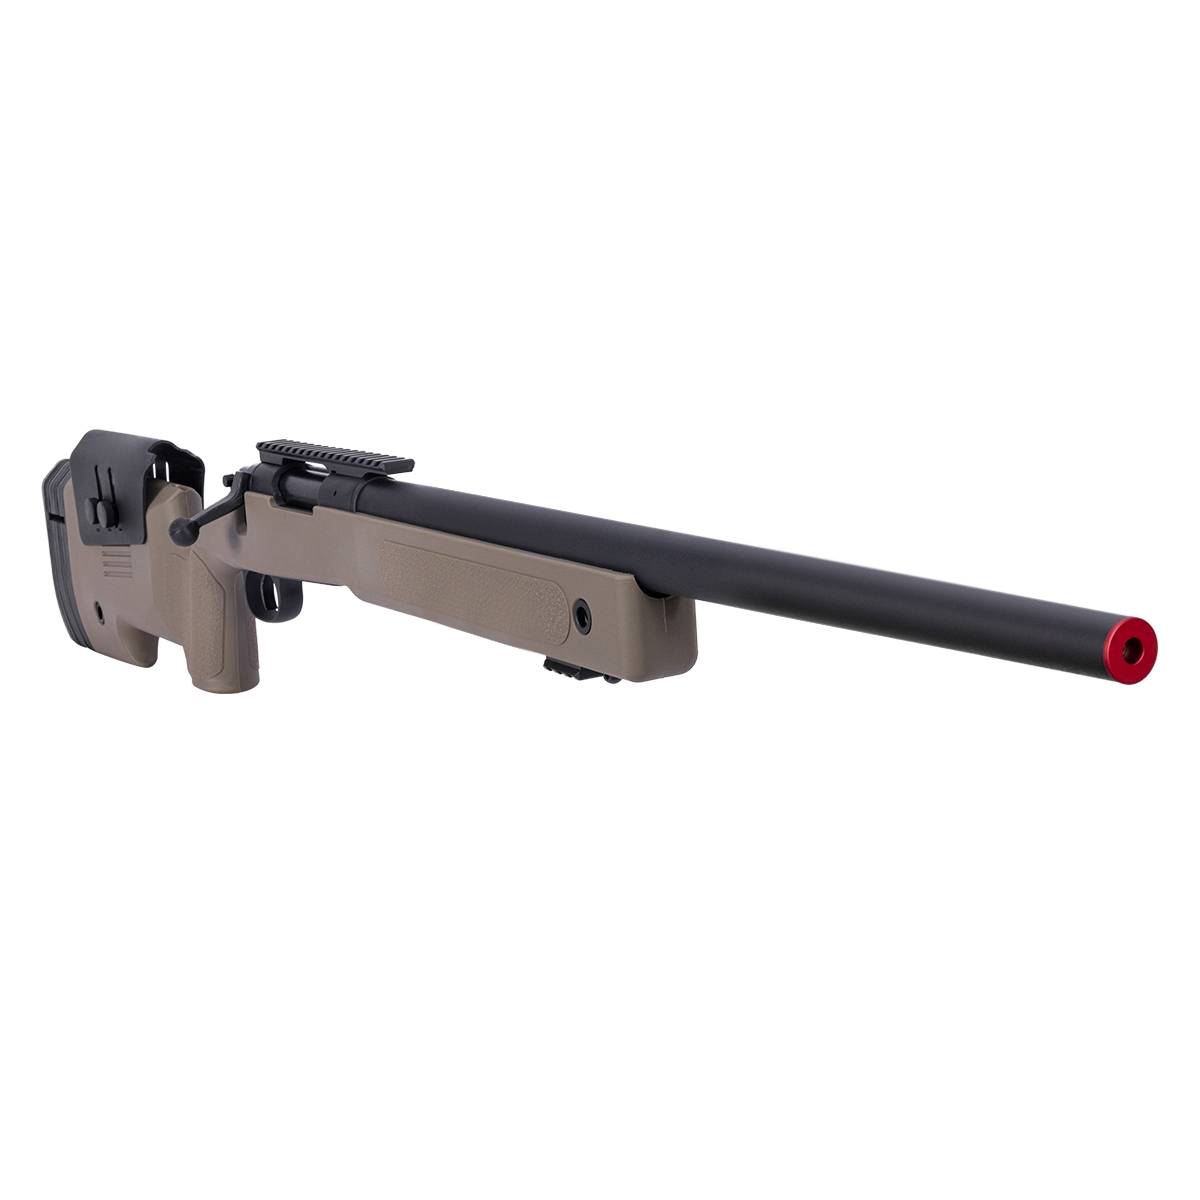 Rifle Sniper M40 S02 Preto - Specna Arms com melhor preço e